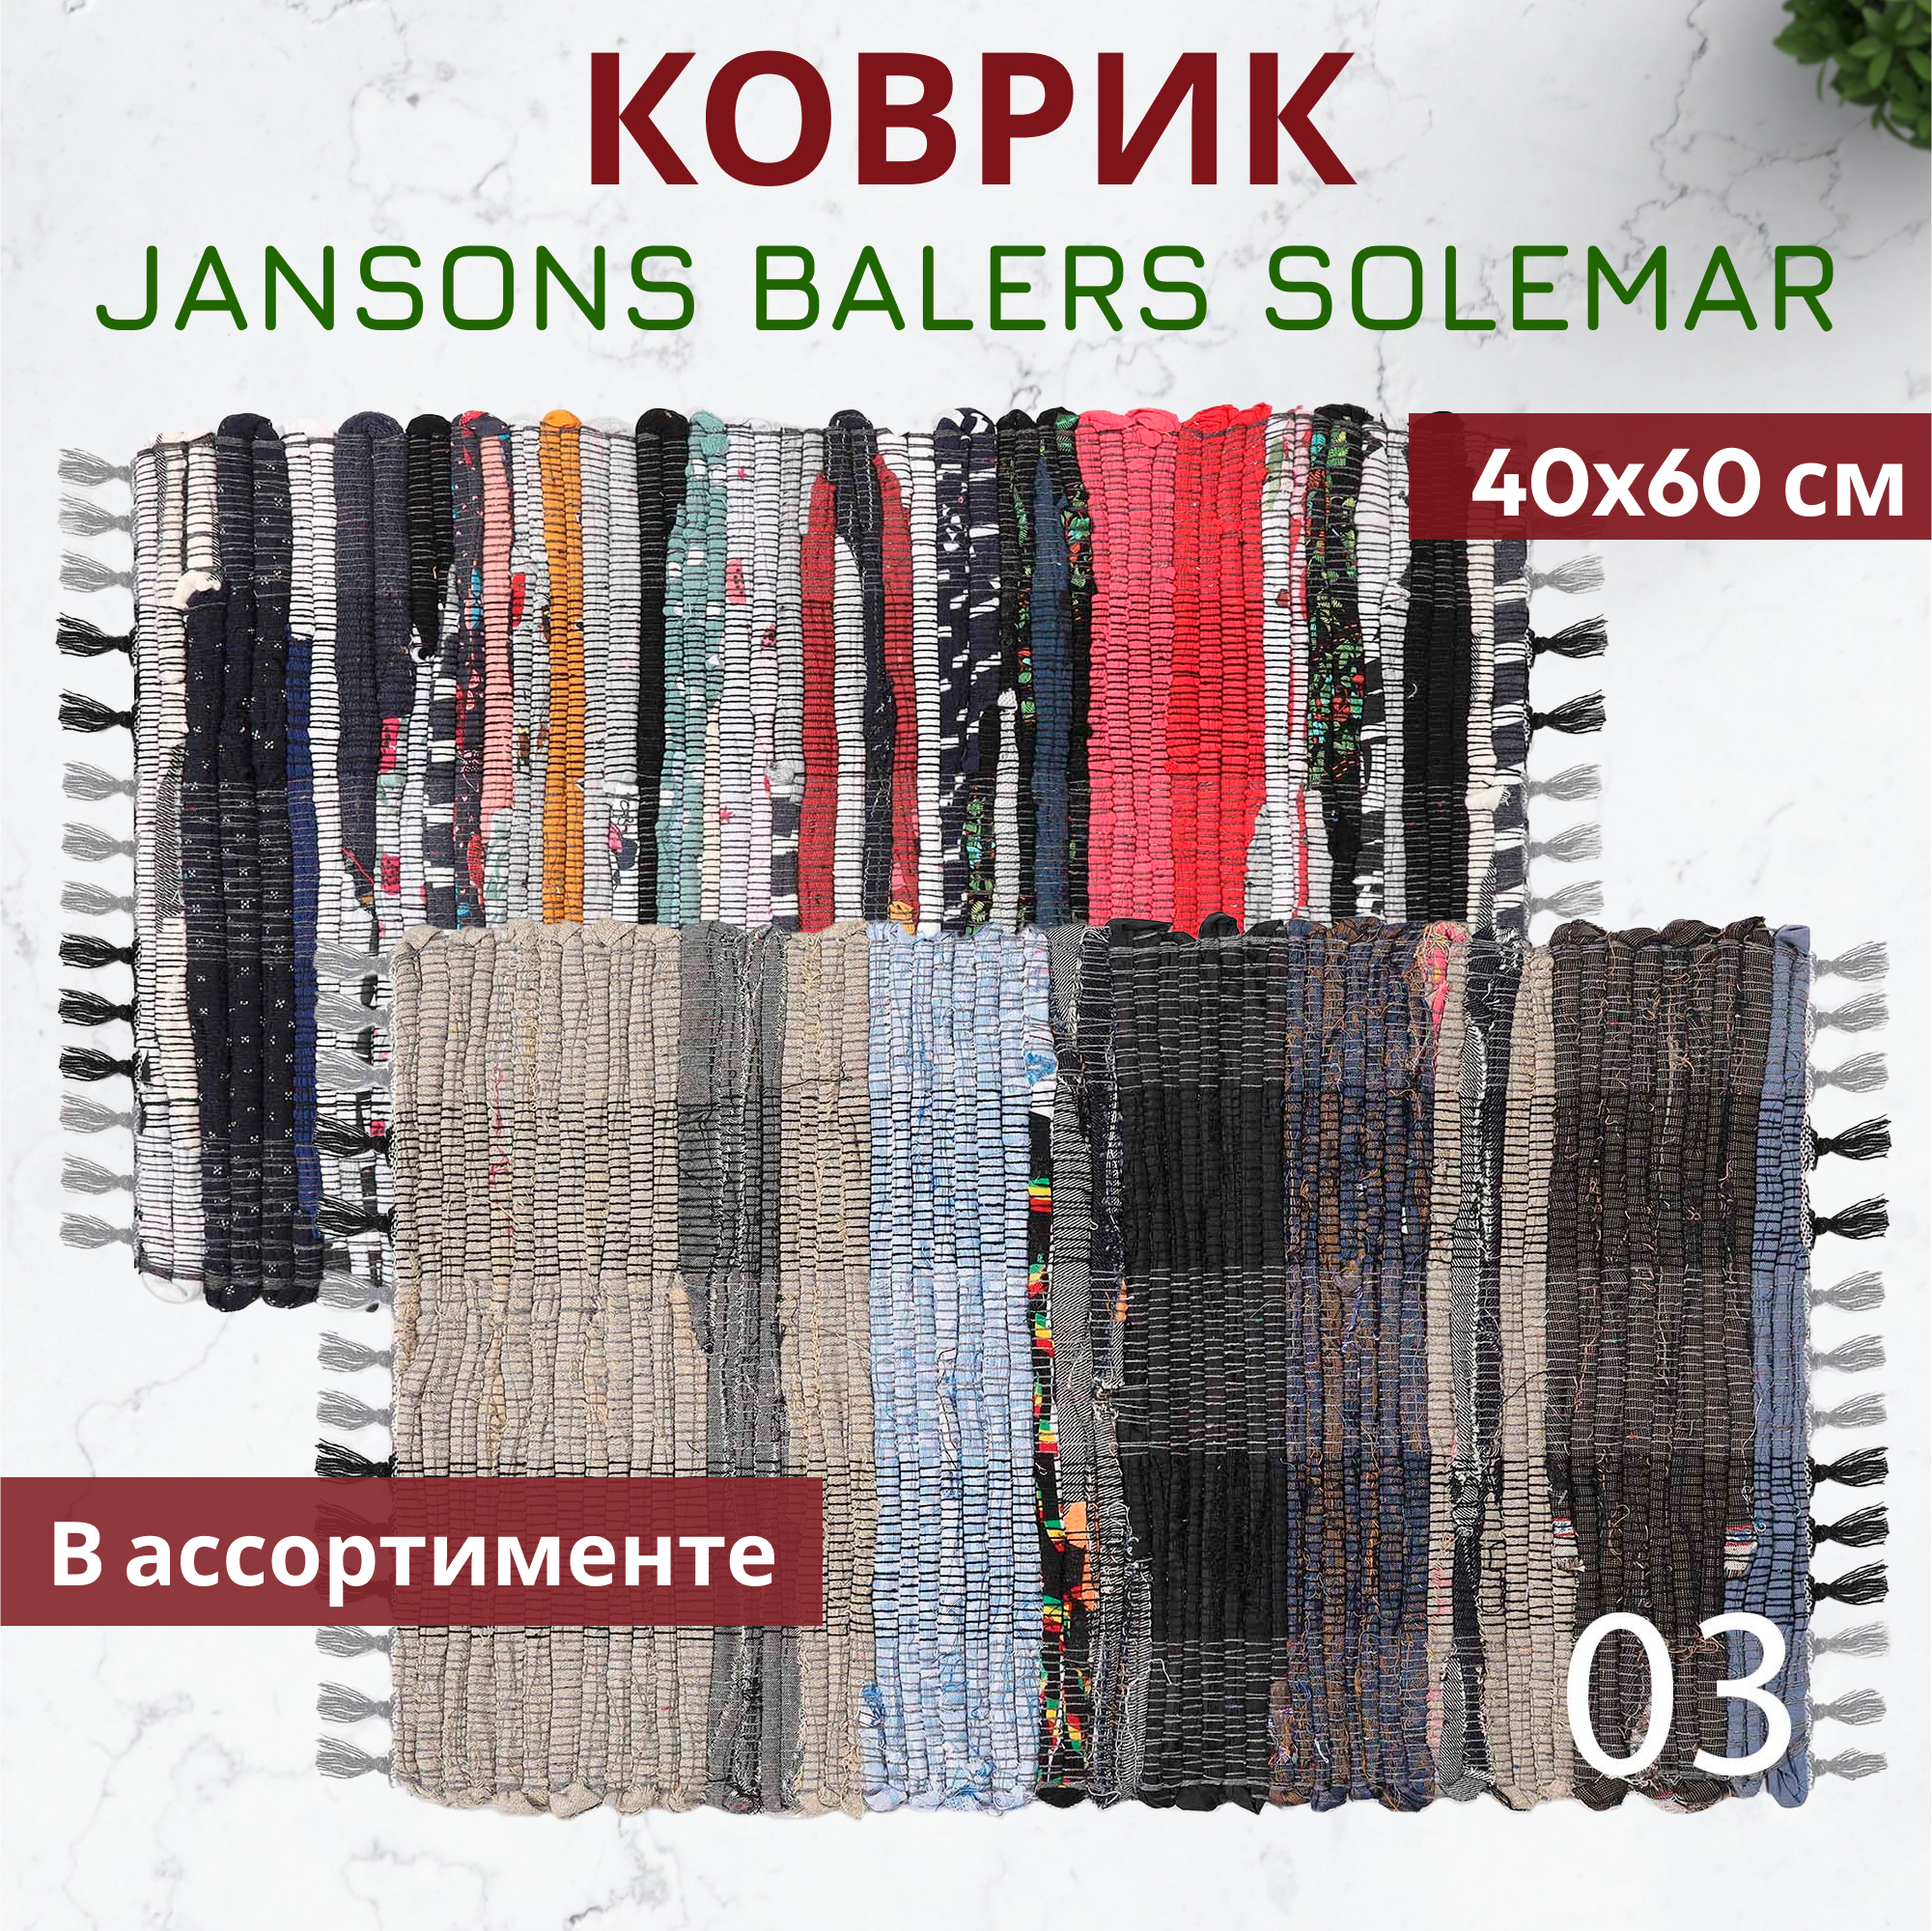 Коврик Jansons Balers Solemar в ассортименте 40x60 см, цвет мультиколор - фото 2